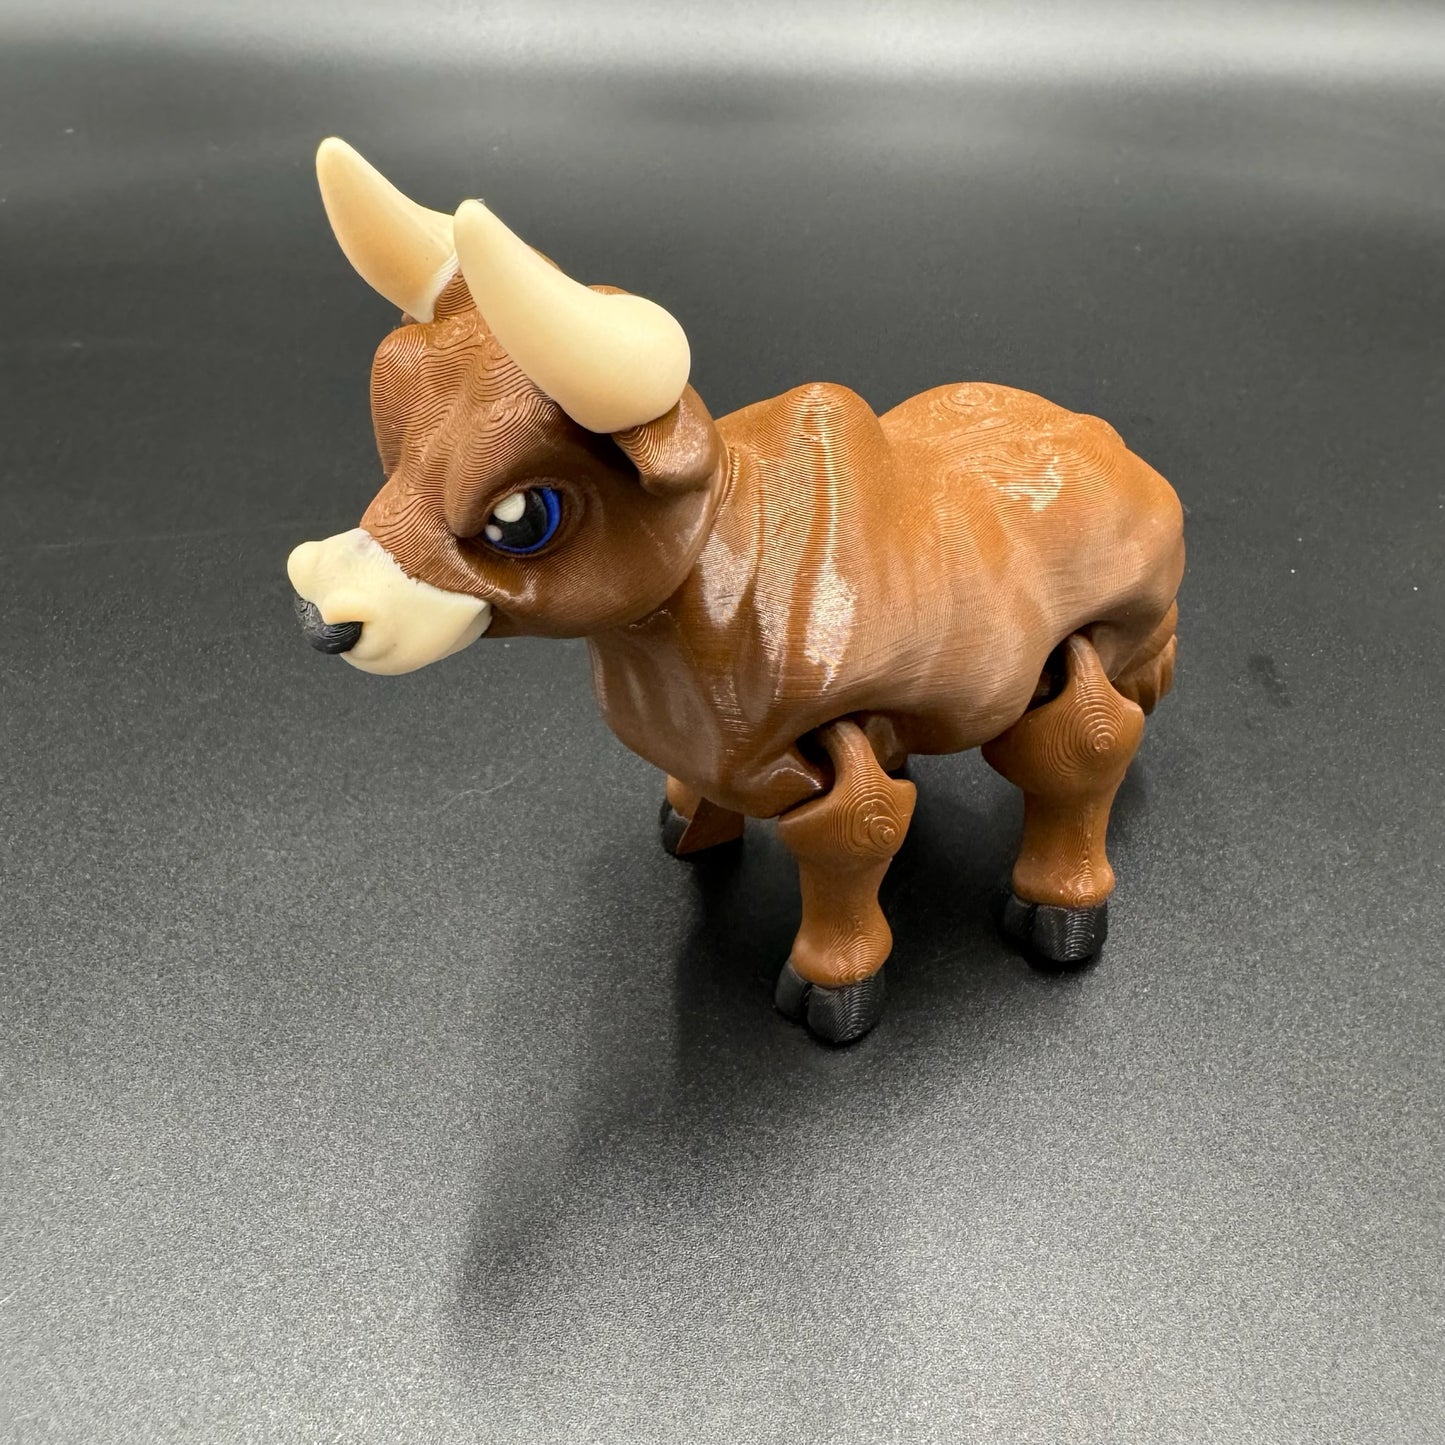 3D Printed Bull